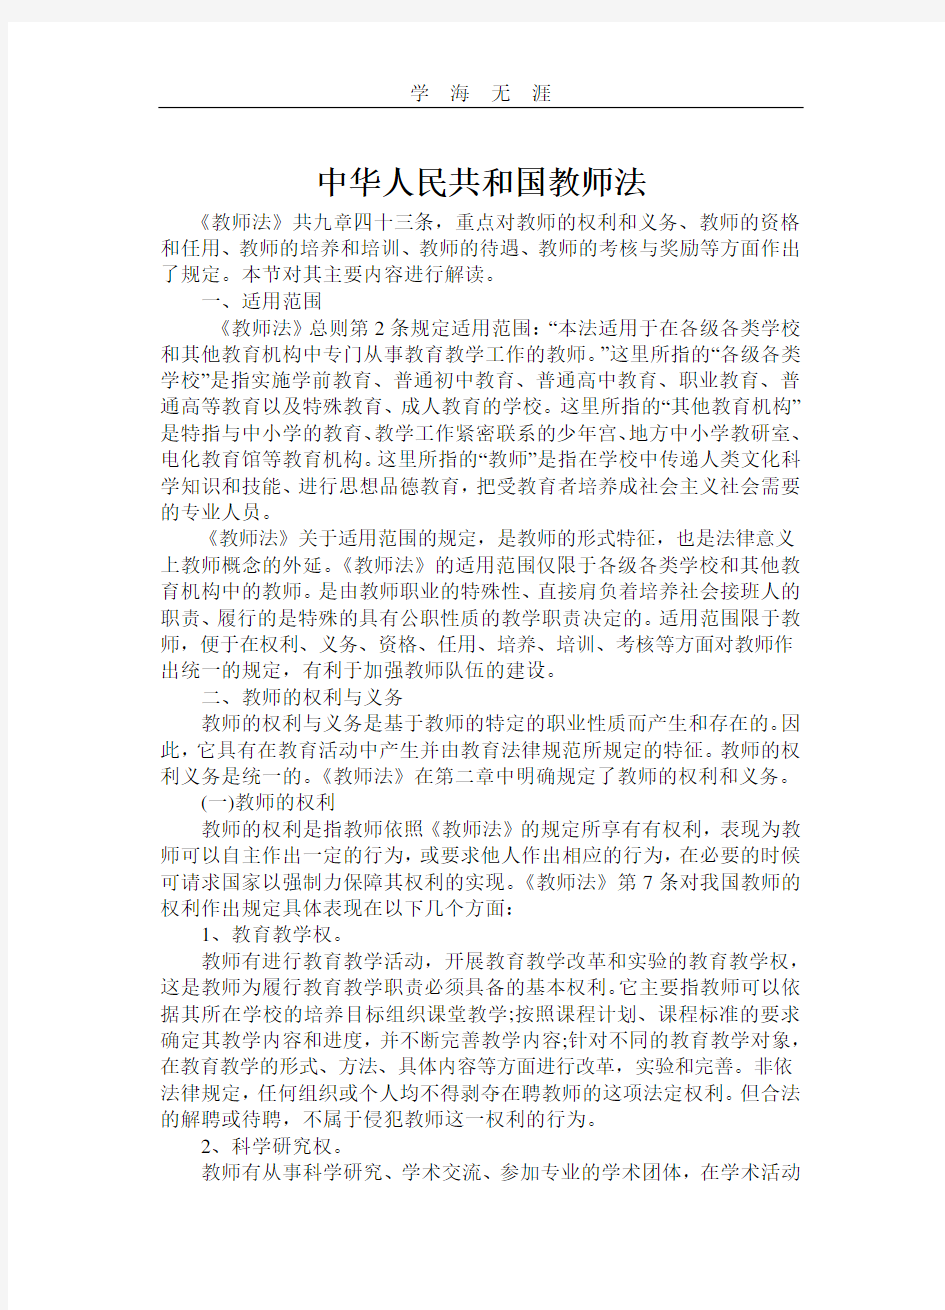 2020年整理中华人民共和国教师法.pdf